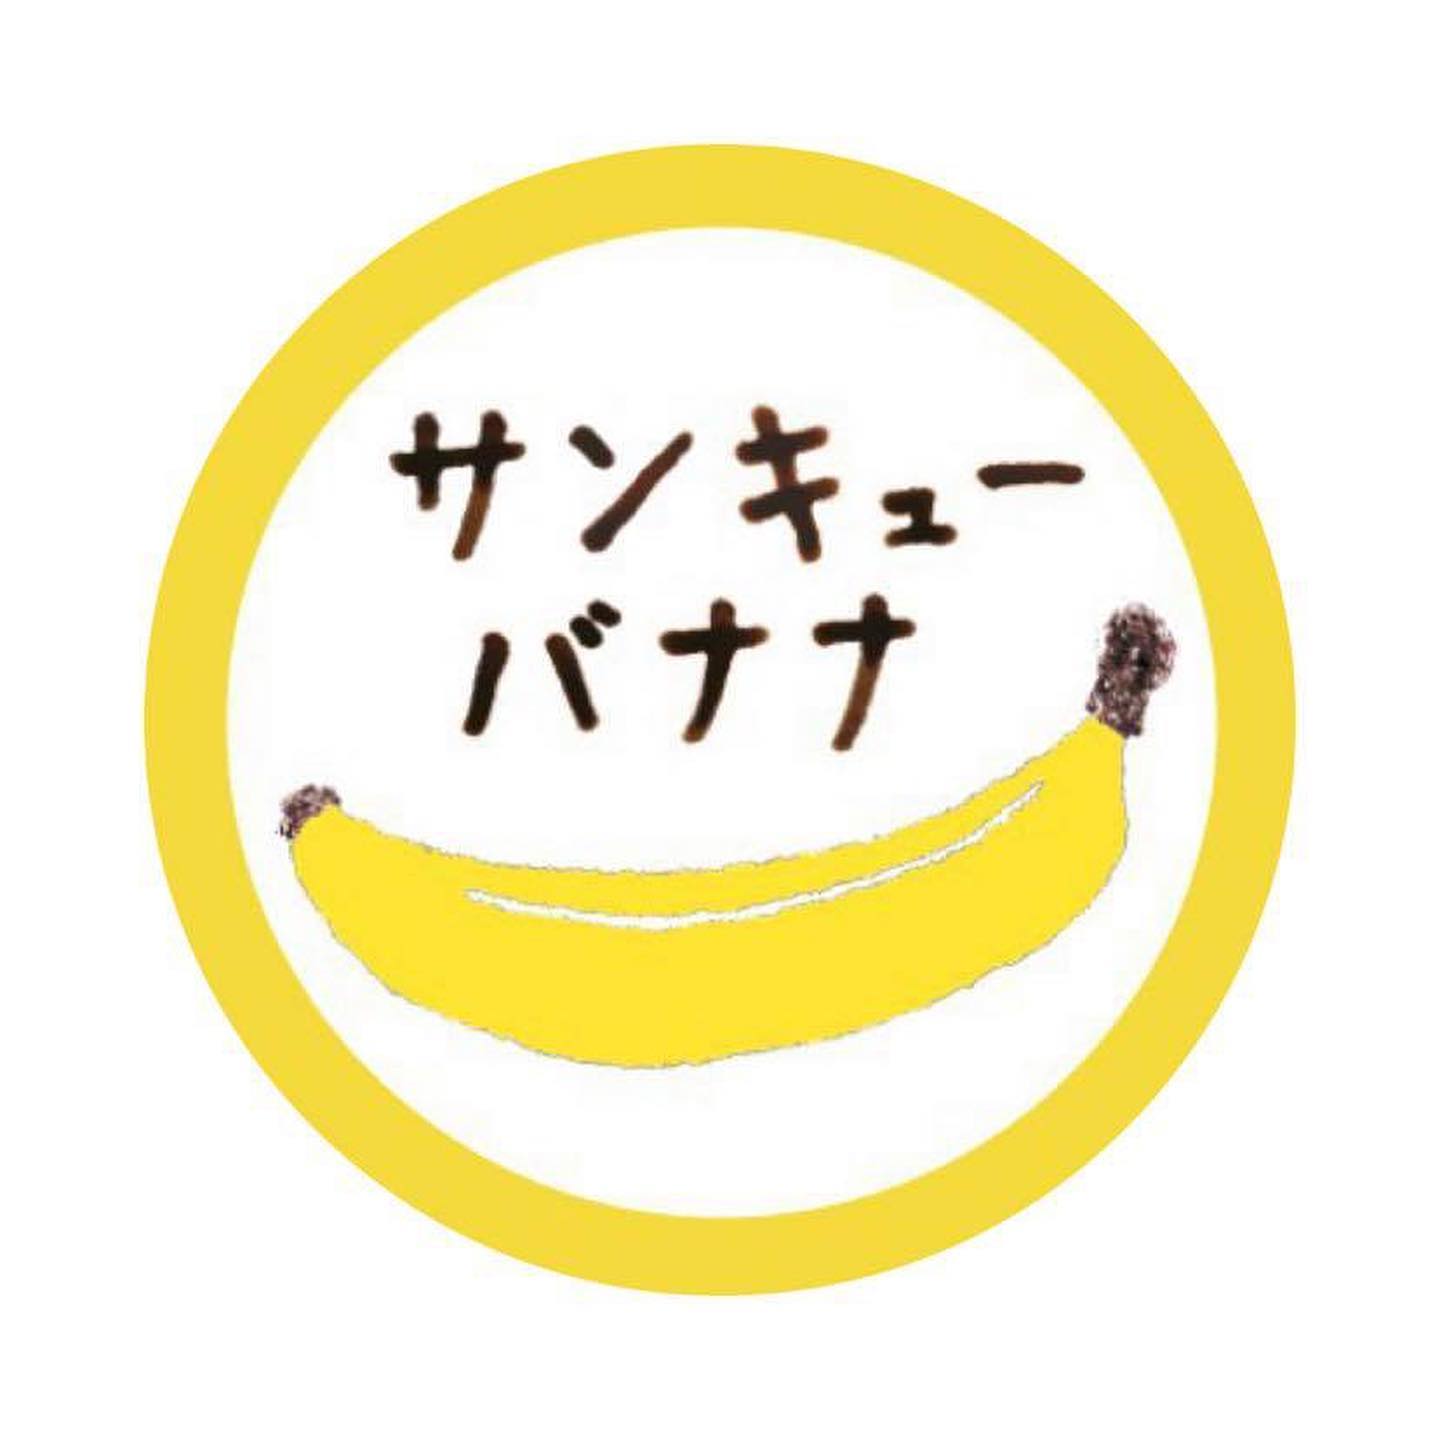 ・出店者紹介！・@thankyoubanana.jp ・毎日飲んでも飽きないものにしたくて材料はシンプルに、 素材はいいものを。お砂糖もはちみつも使用していません。 完熟したバナナだけで作る 自然そのままの甘みを体感してください。バナナには幸せを感じるホルモンと言われる 「セロトニン」を作る成分が豊富で、 ミルクはイライラを解消して 安心感をもたらしてくれるのだそう。 サンキューバナナで小さな幸せが届いたら、私たちも幸せです。#projectnowhere #project#nowhere#沼尻高原ロッジ #沼尻